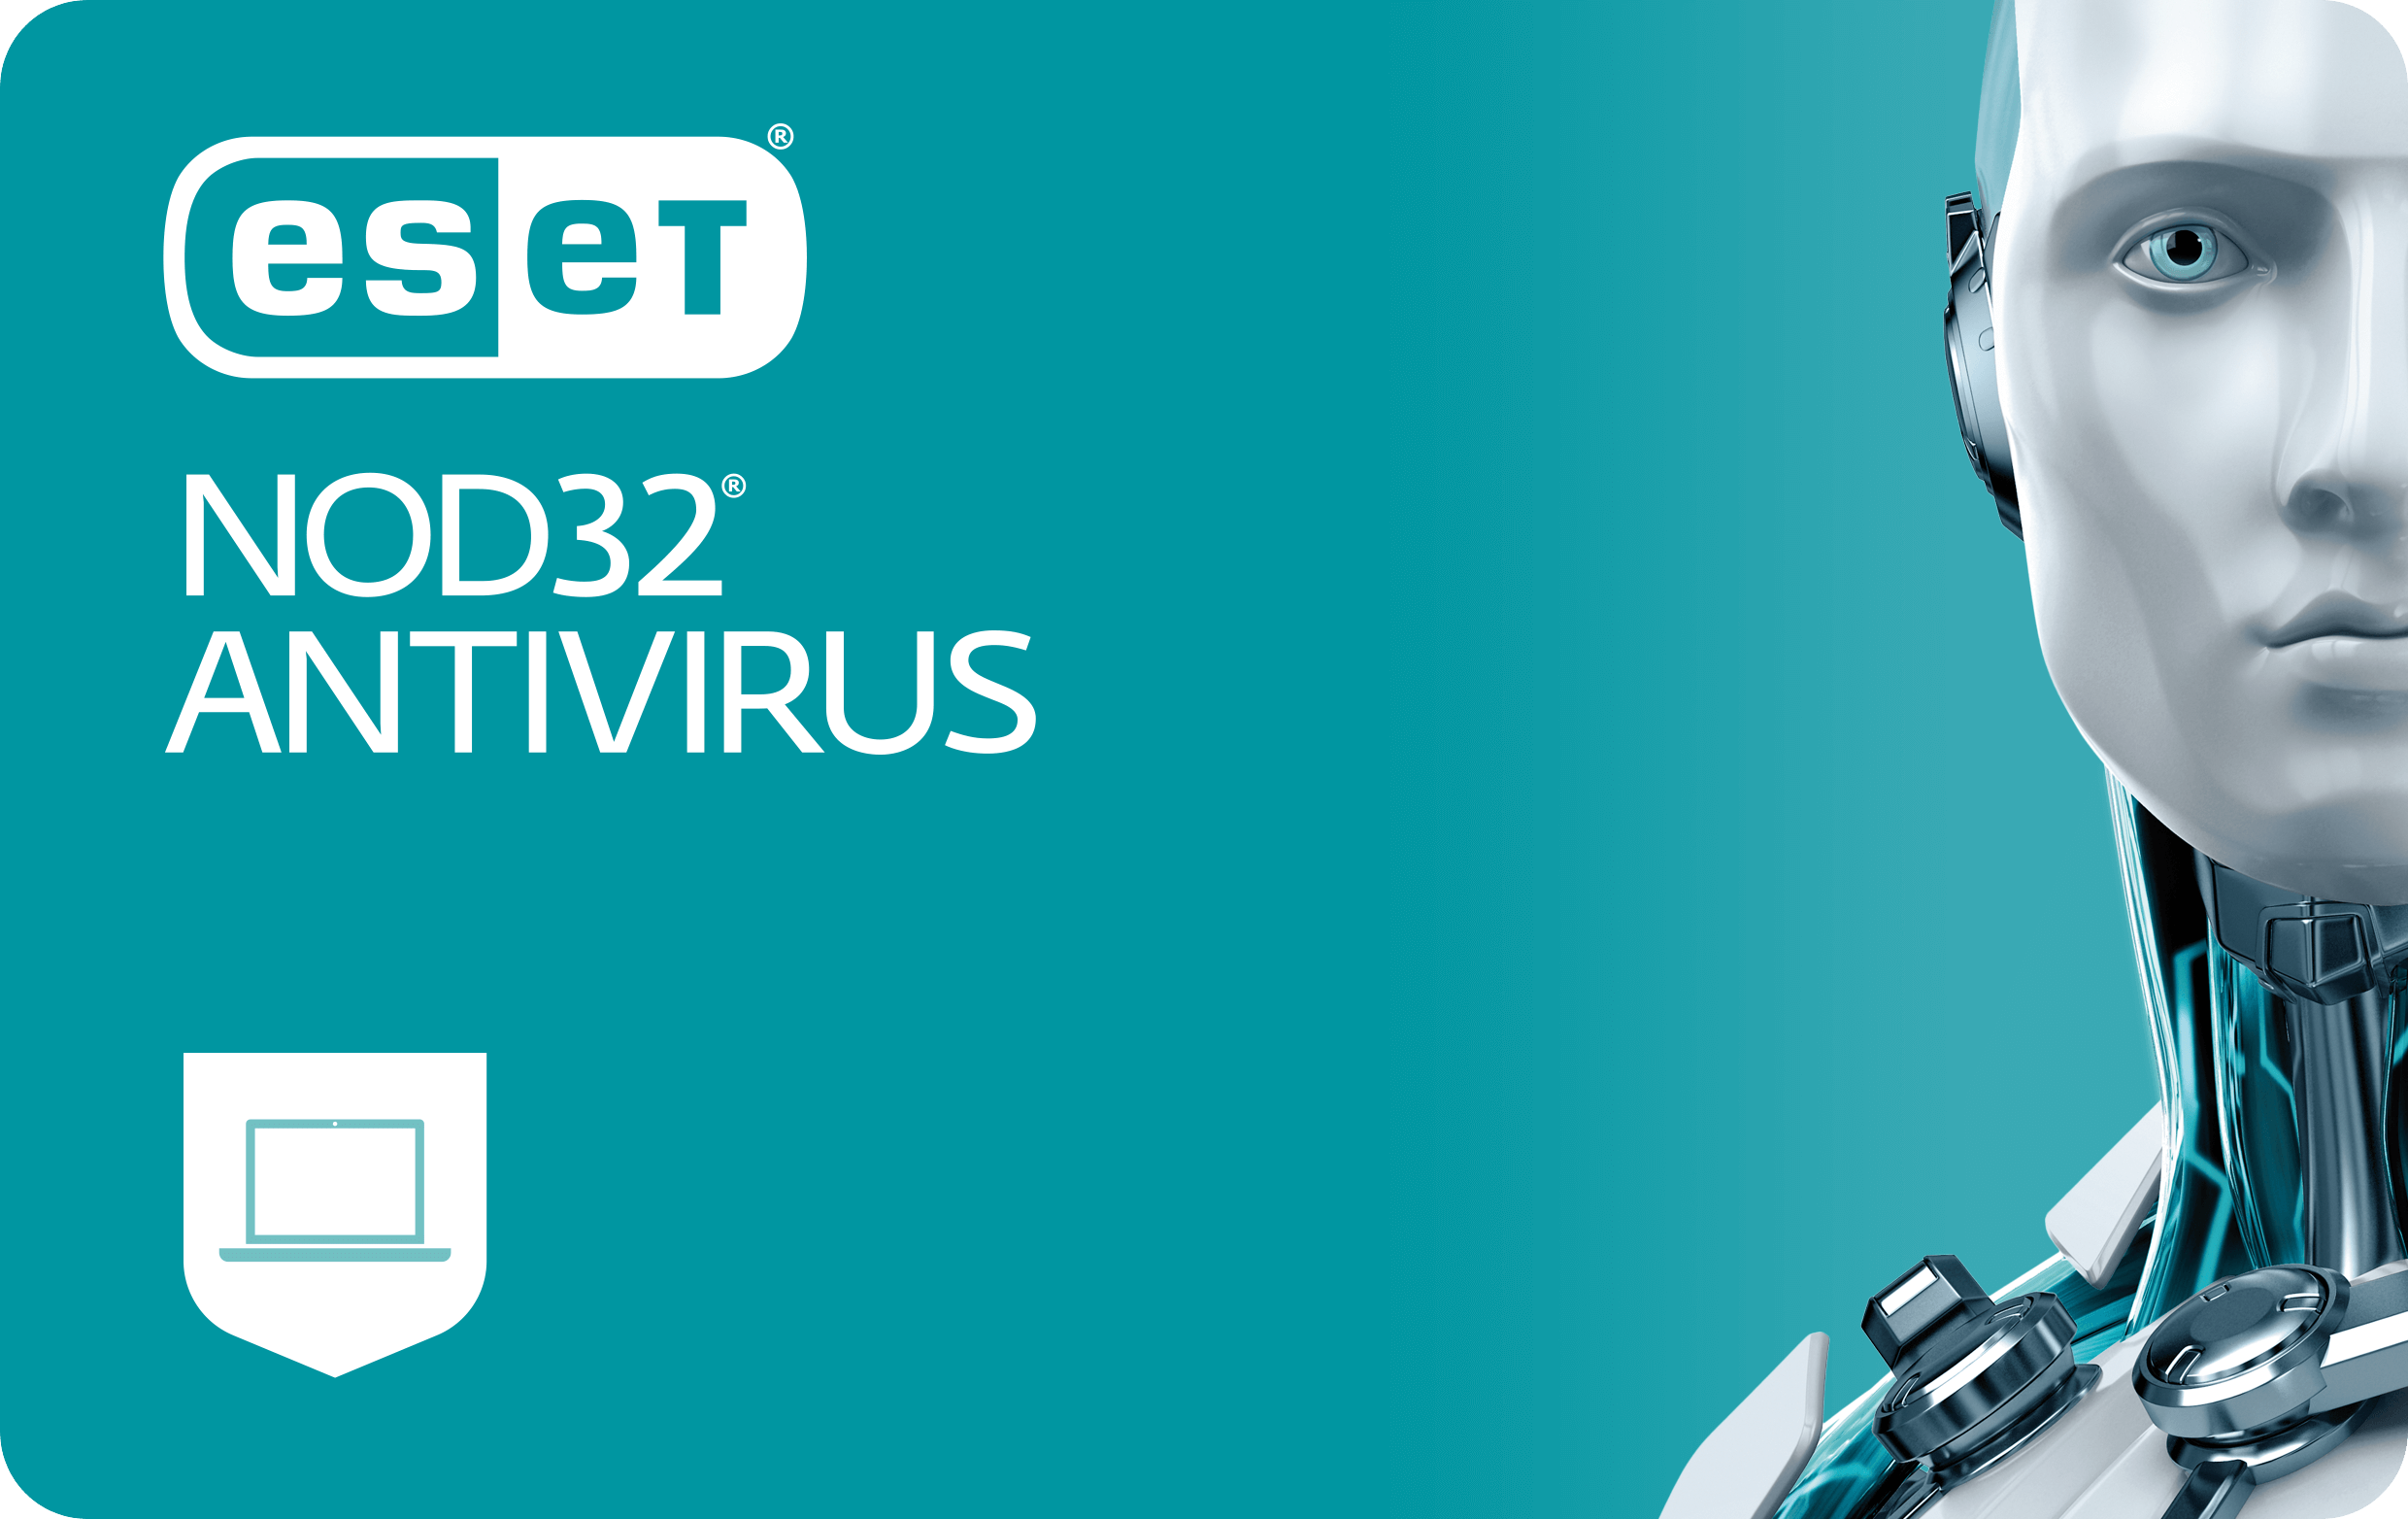   Les anti-virus monoposte   Nod32 Anti-virus particulier client unique 2023 